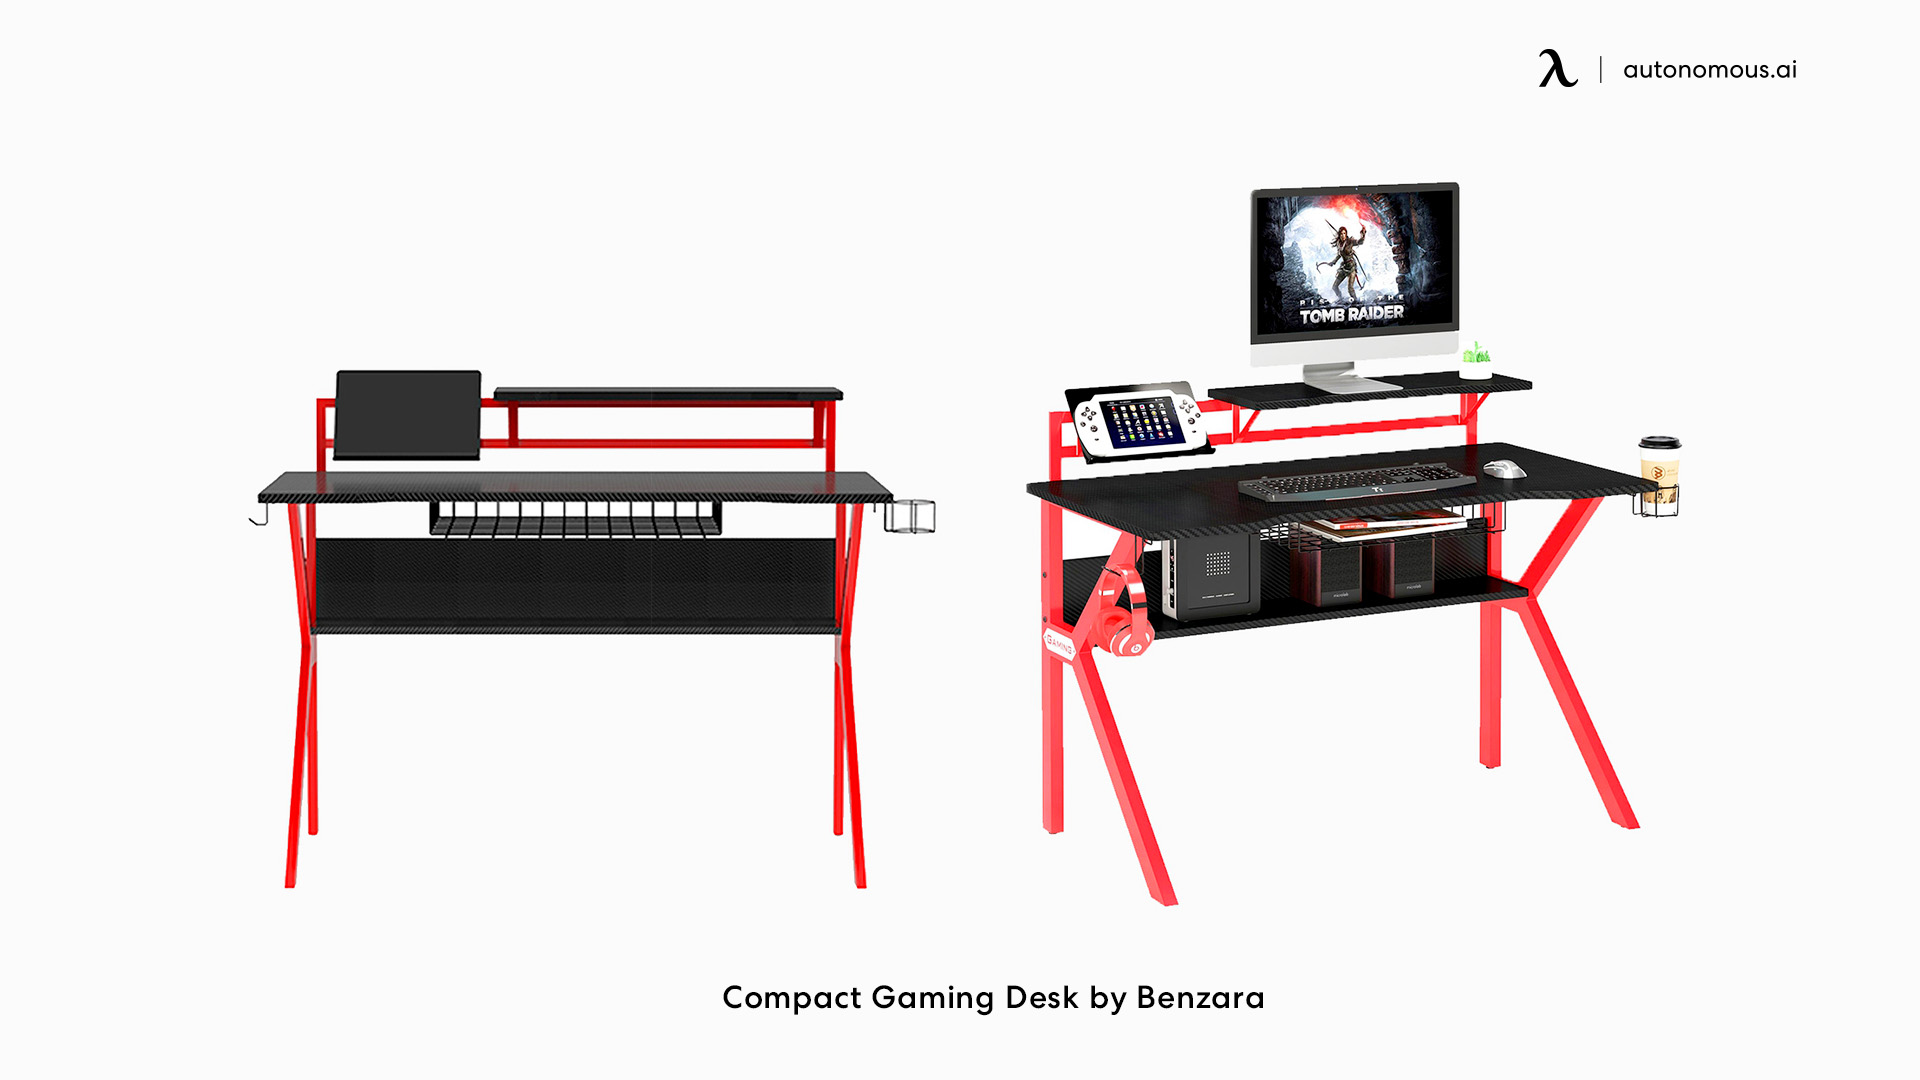 Compact black gaming desk by Benzara